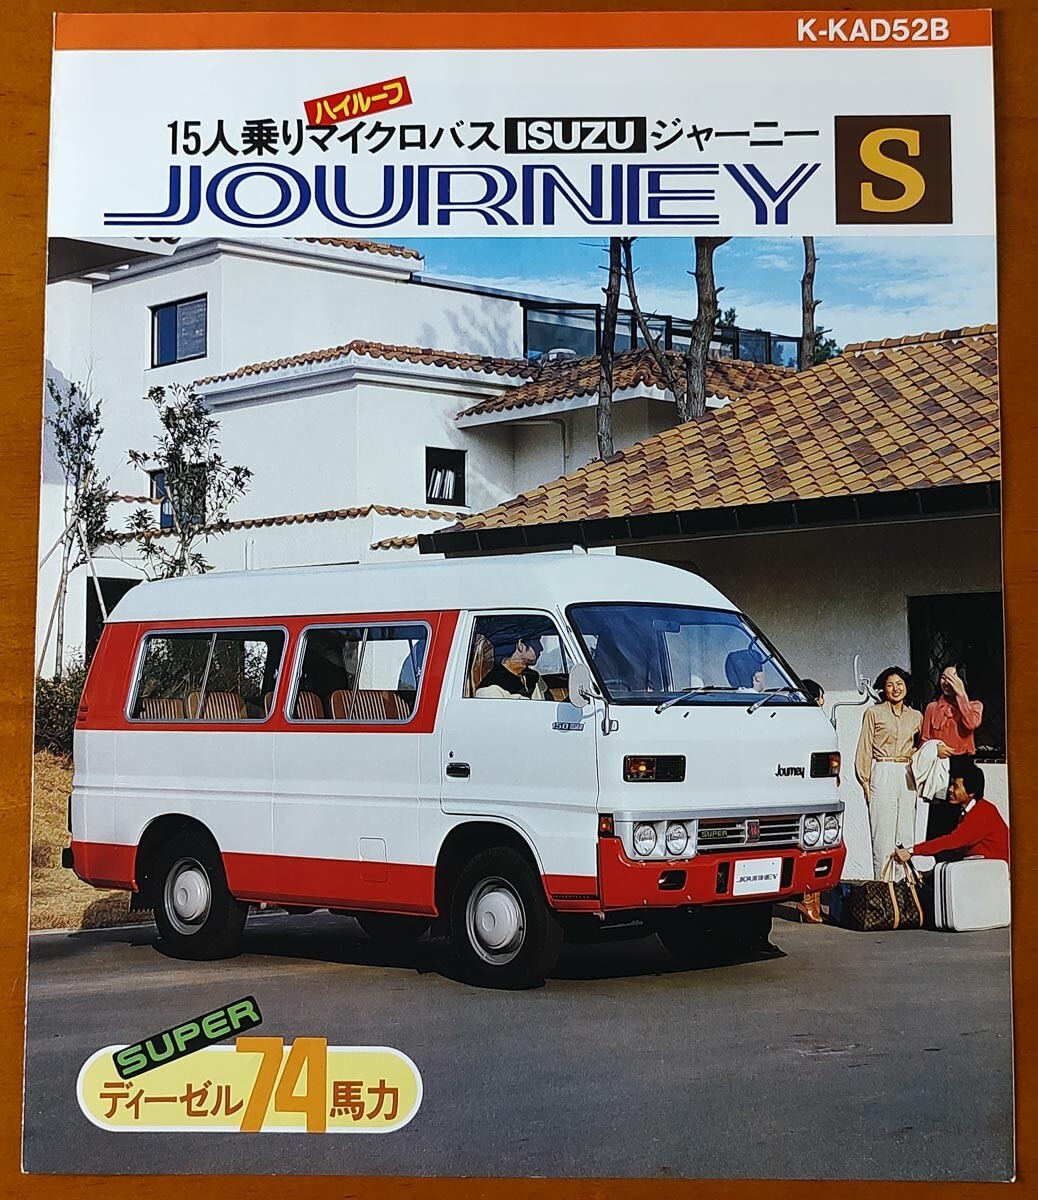 いすゞ ジャーニー S 昭和55年4月 JOURNEY S 15人乗ハイルーフマイクロバス K-KAD52B KAD52B 2ページの画像1